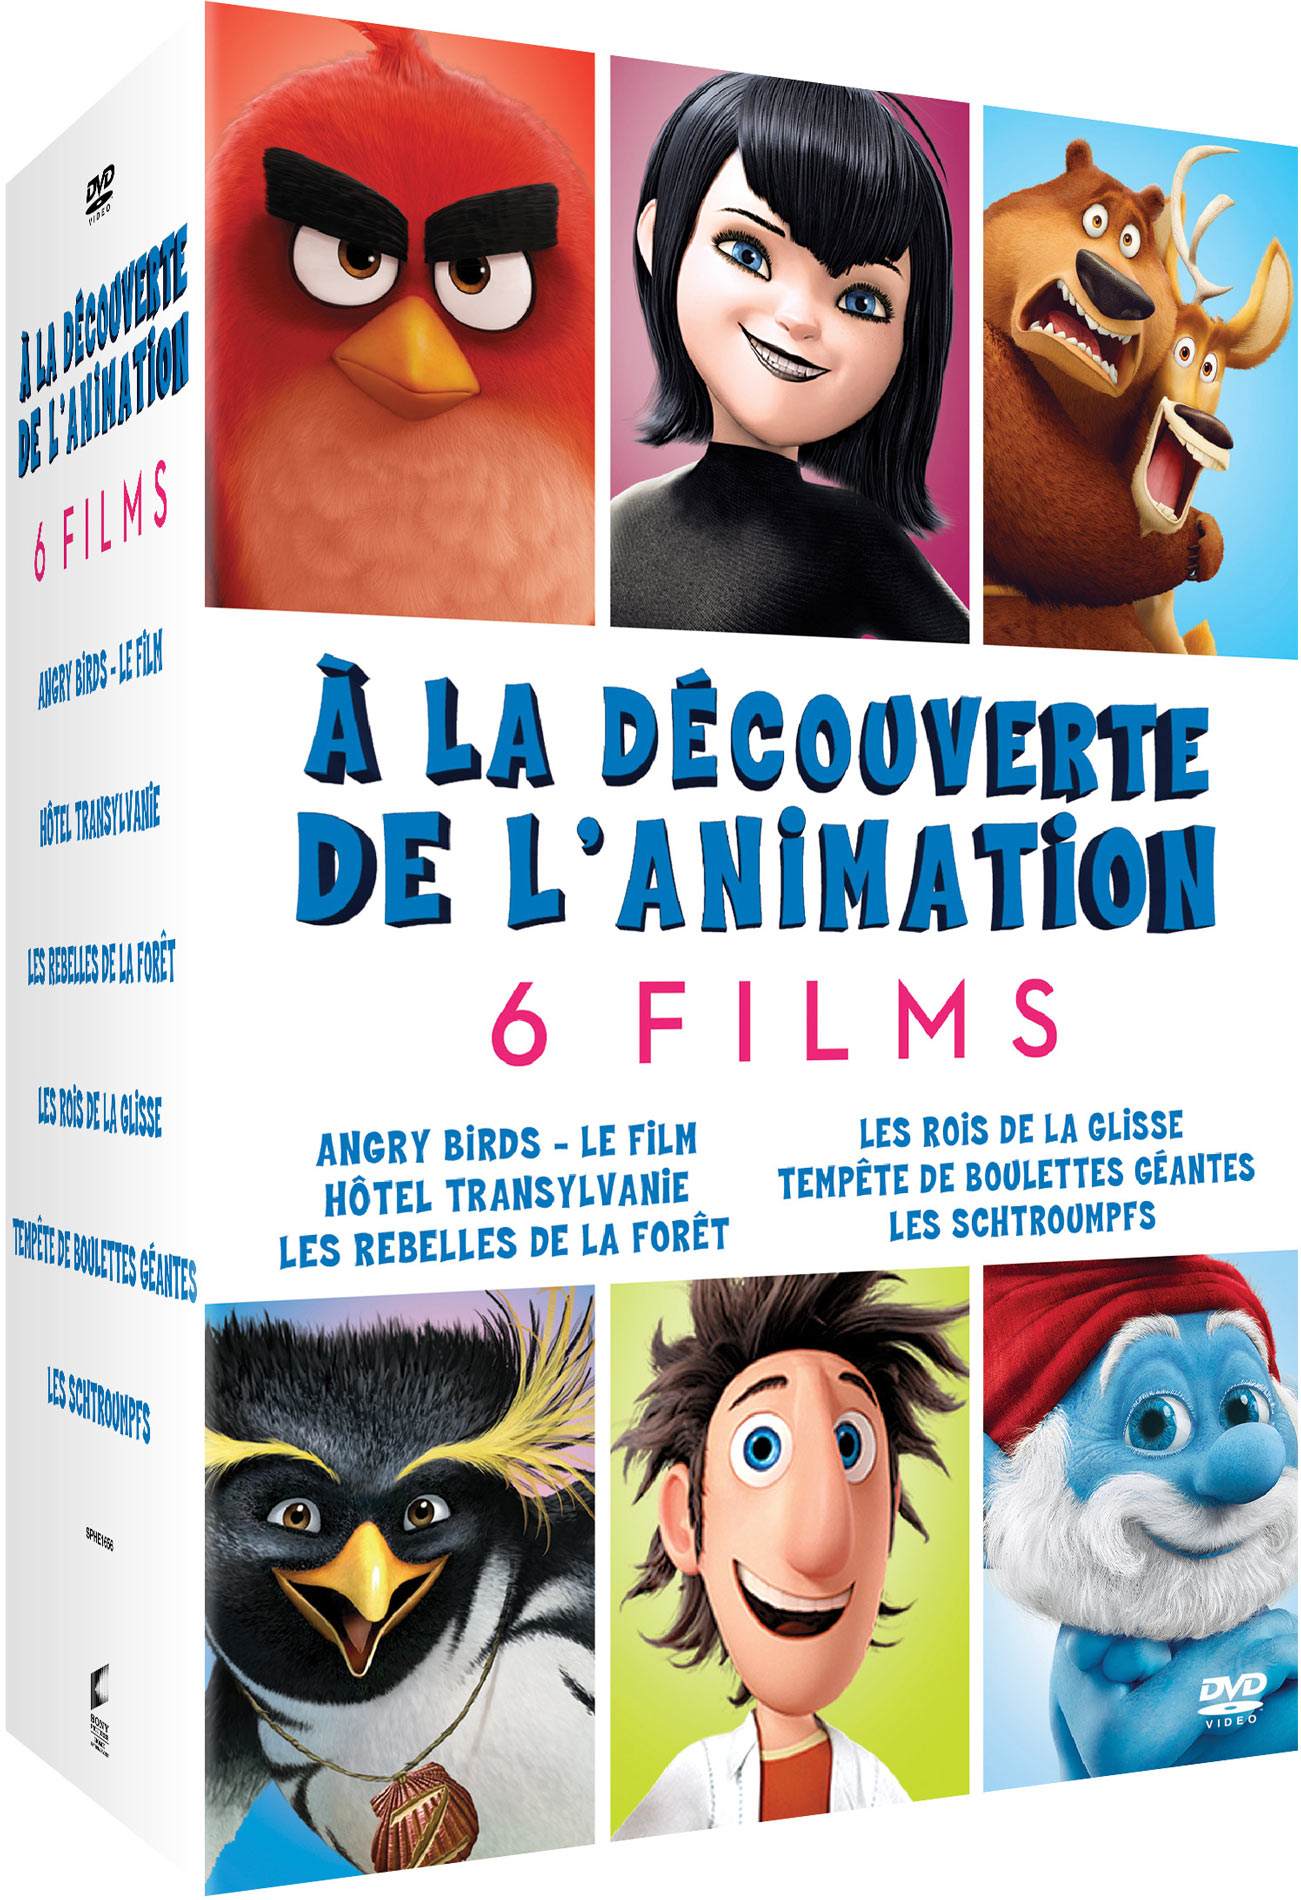 A LA DECOUVERTE DE L'ANIMATION - 6 FILMS - 6 DVD